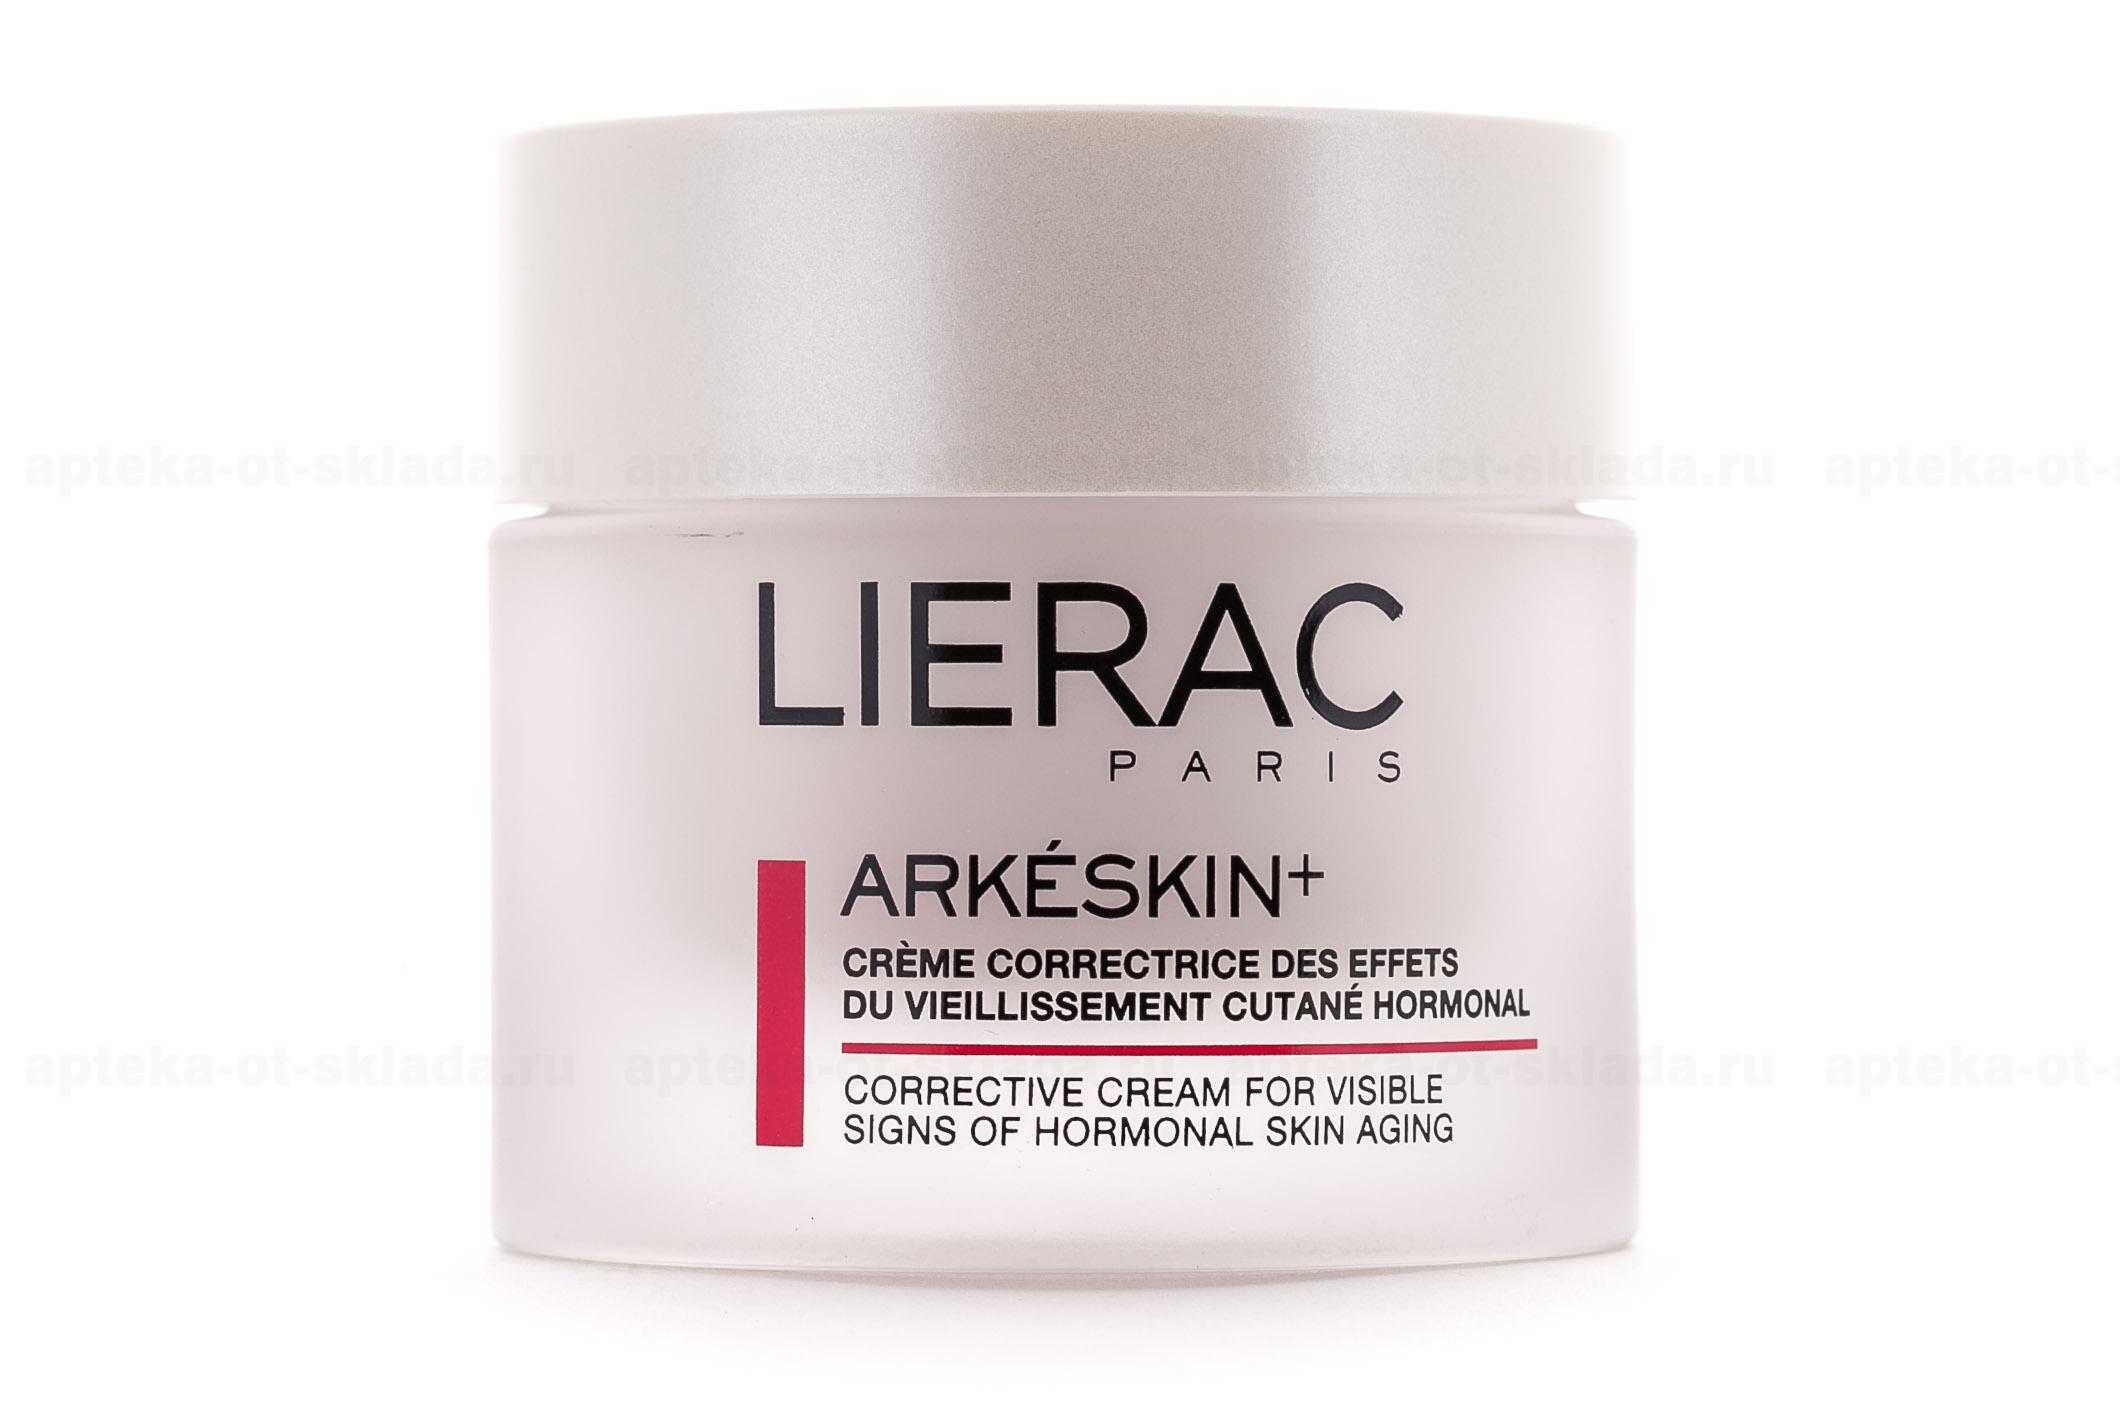 Lierac Аркескин+ крем коррекция гормонального старения кожи 50мл